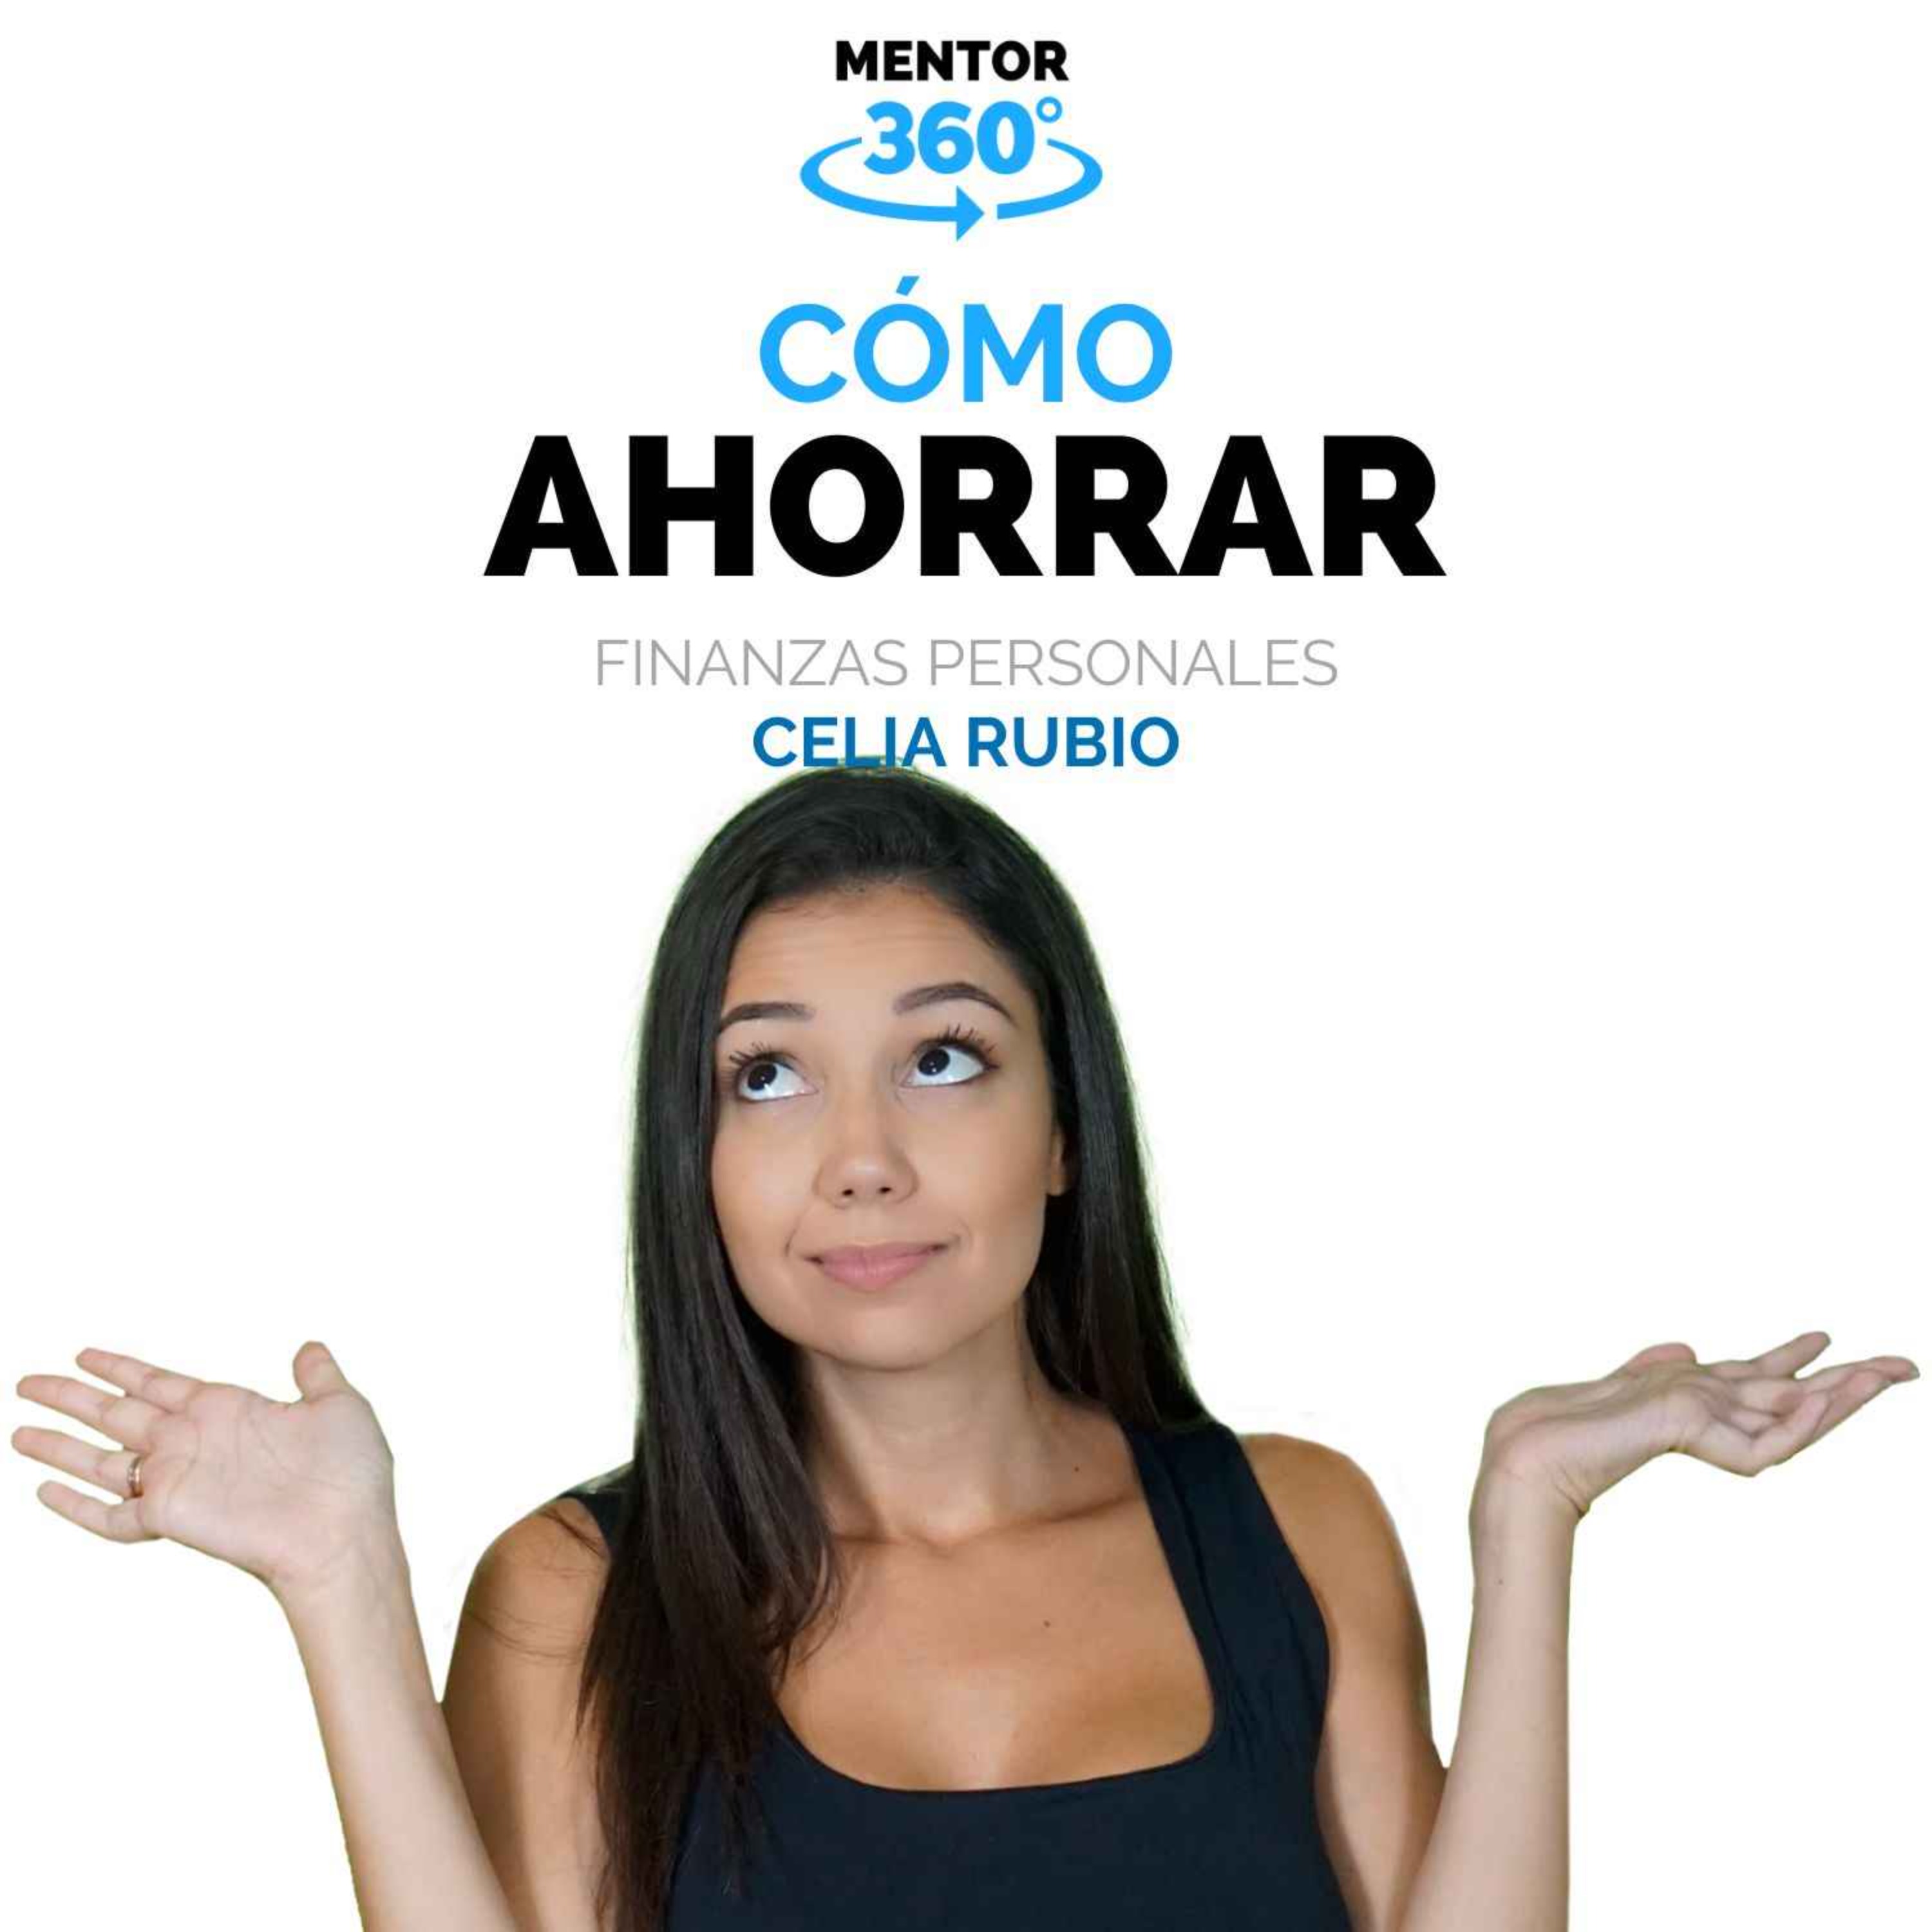 Cómo Ahorrar - Celia Rubio - Finanzas Personales - MENTOR360